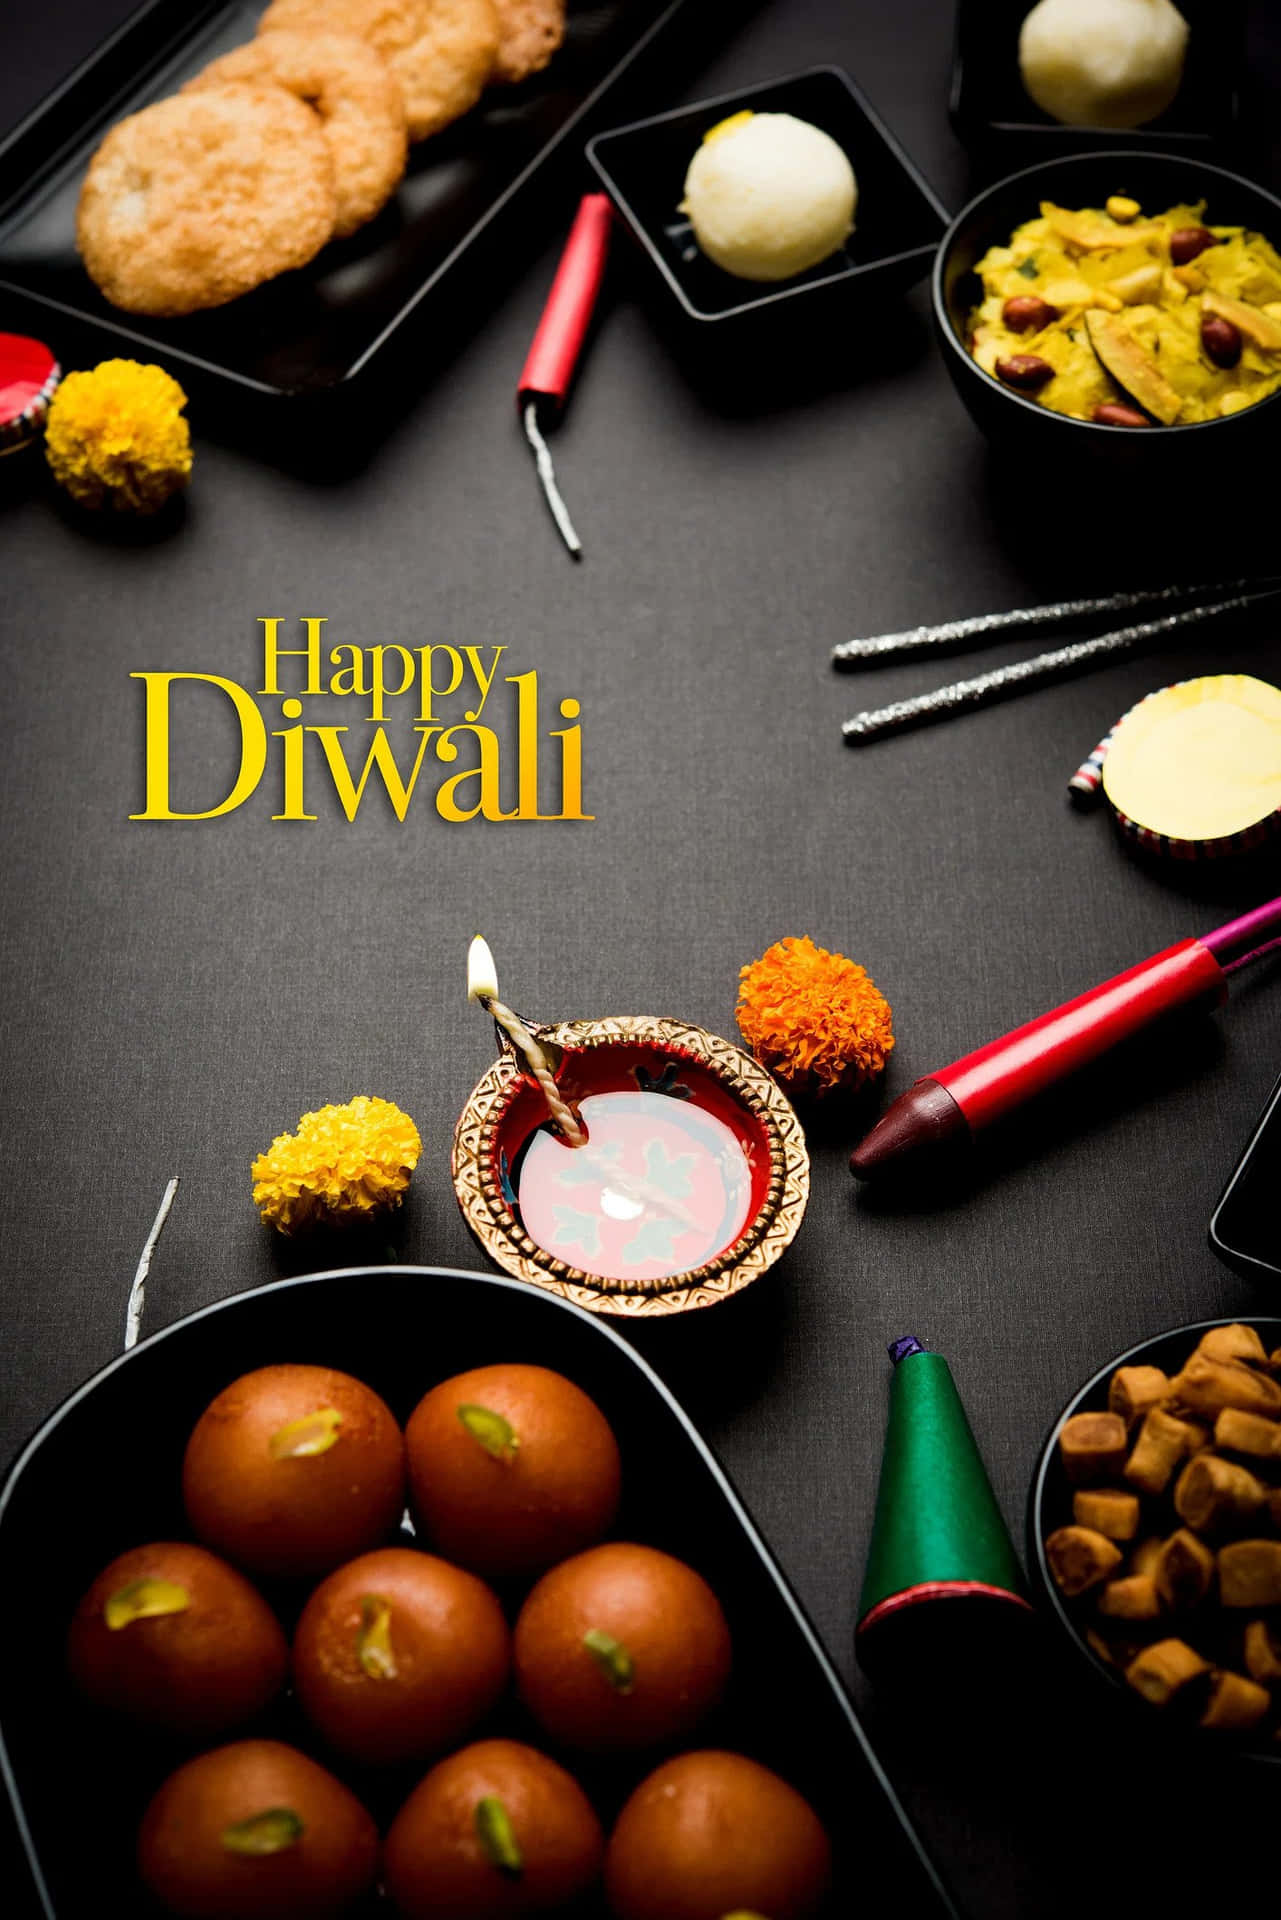 Önskardig Glädje Och Lycka På Den Festliga Anledningen Av Diwali.